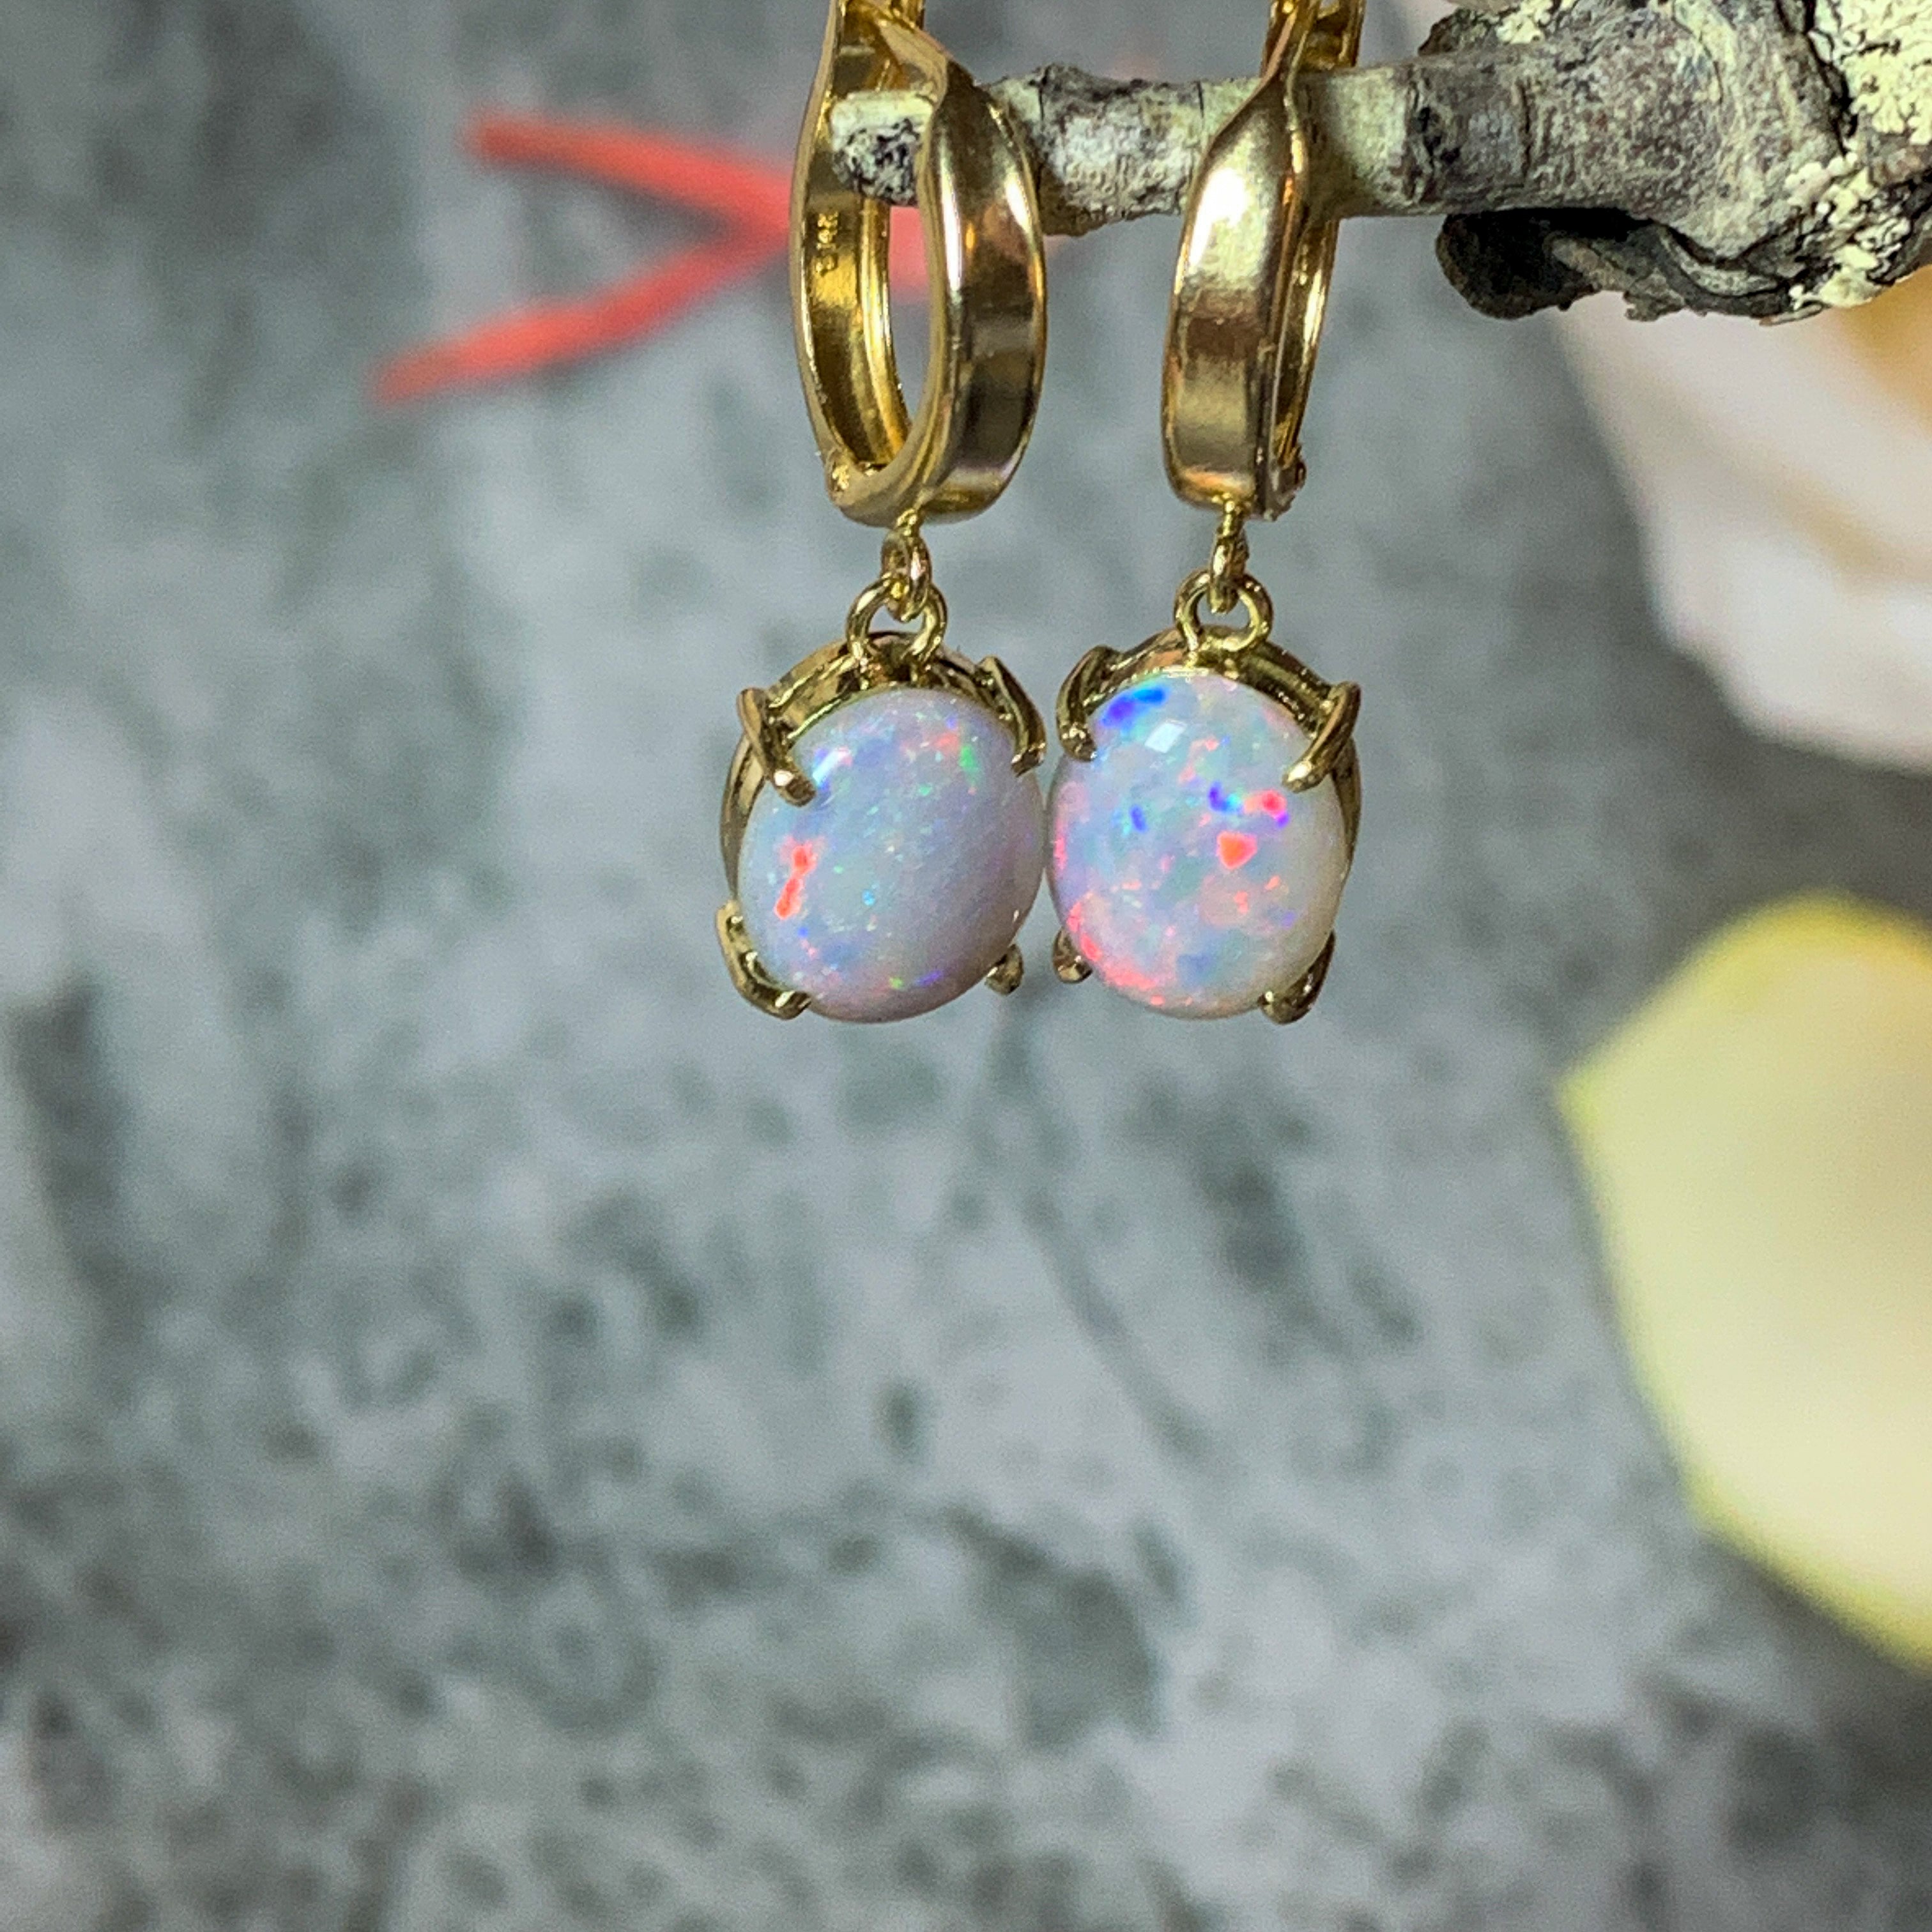 14kt Yellow Gold drop Huggie earrings with Red Dark Opal 2.8ct - Masterpiece Jewellery Opal & Gems Sydney Australia | Online Shop